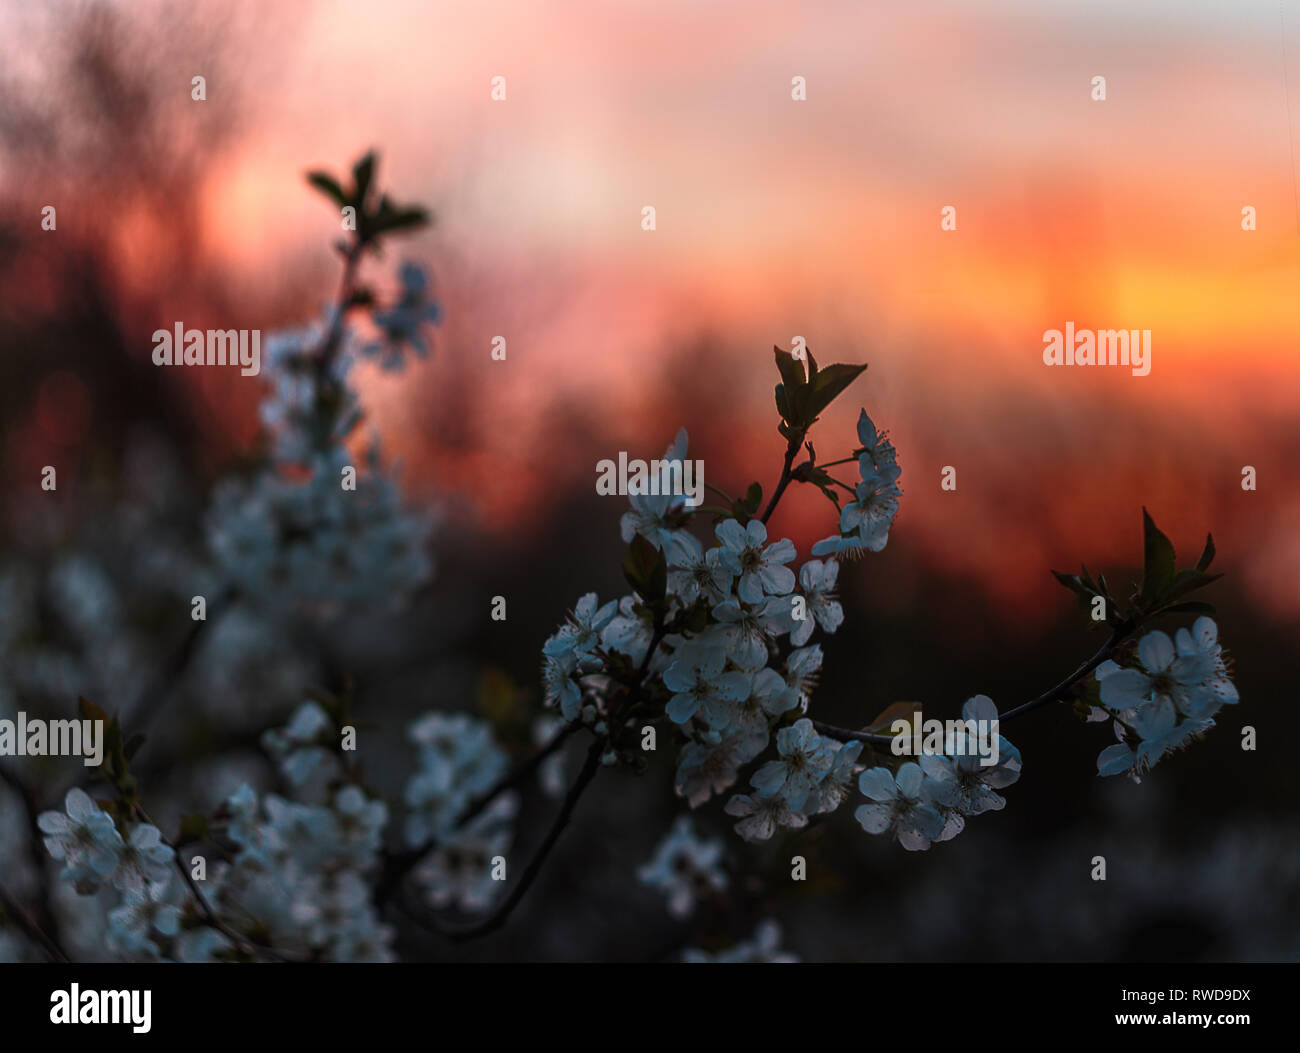 Eine Kirsche Blumen blühen auf den Sonnenuntergang Himmel Hintergrund. Ein Frühling Blumen blühen. Roter Sonnenuntergang Abendhimmel. Blumen, Blätter und Zweige. Stockfoto